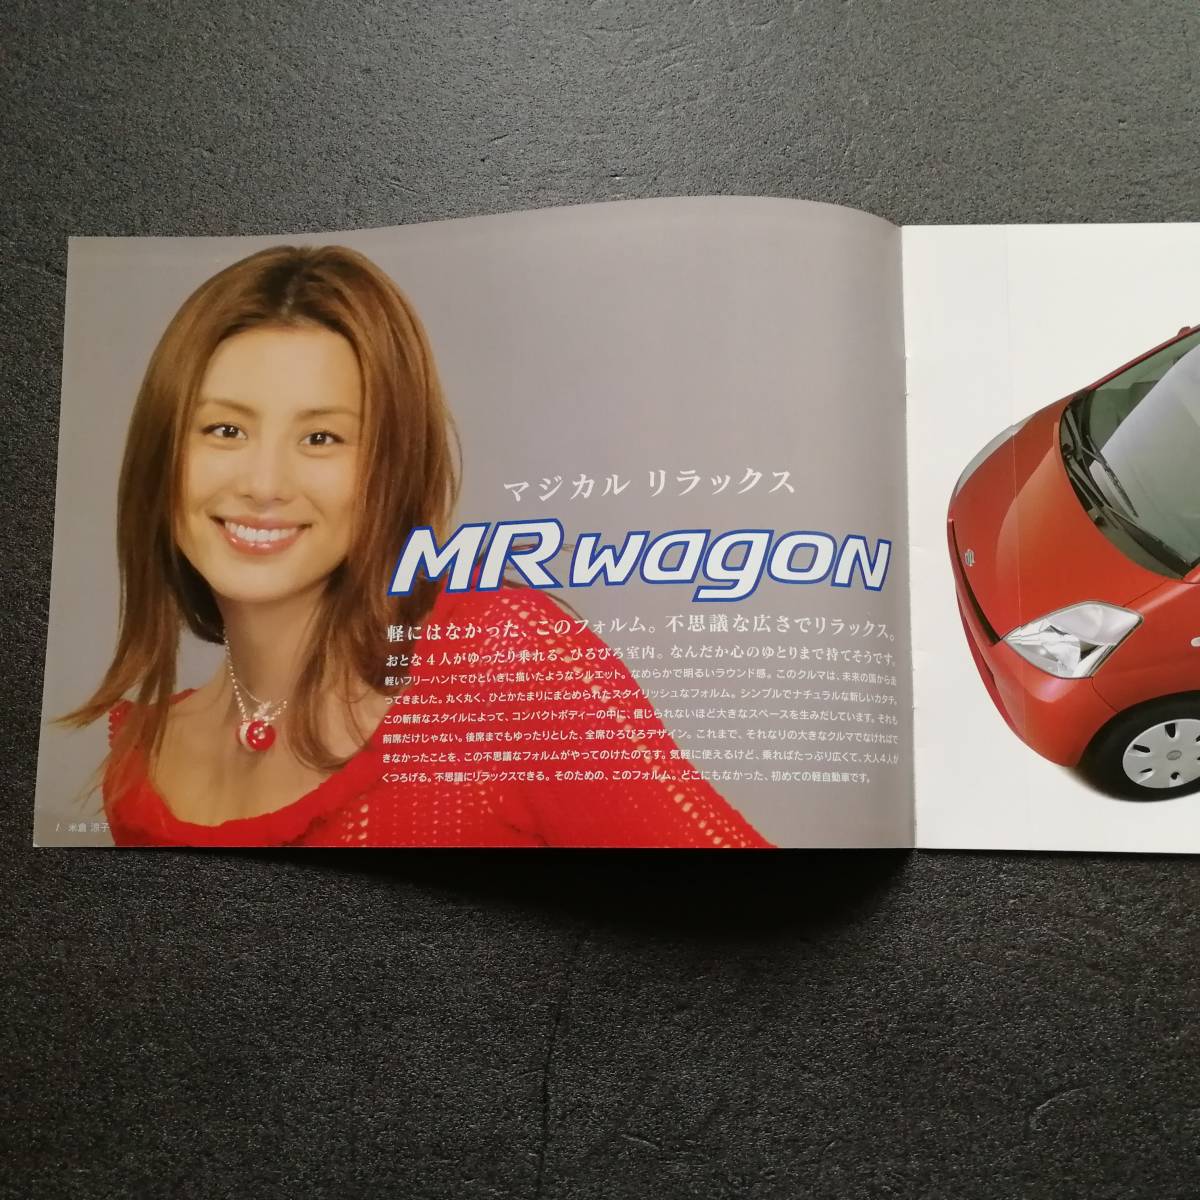  каталог SUZUKI MR Wagon MR wagon Yonekura Ryoko 